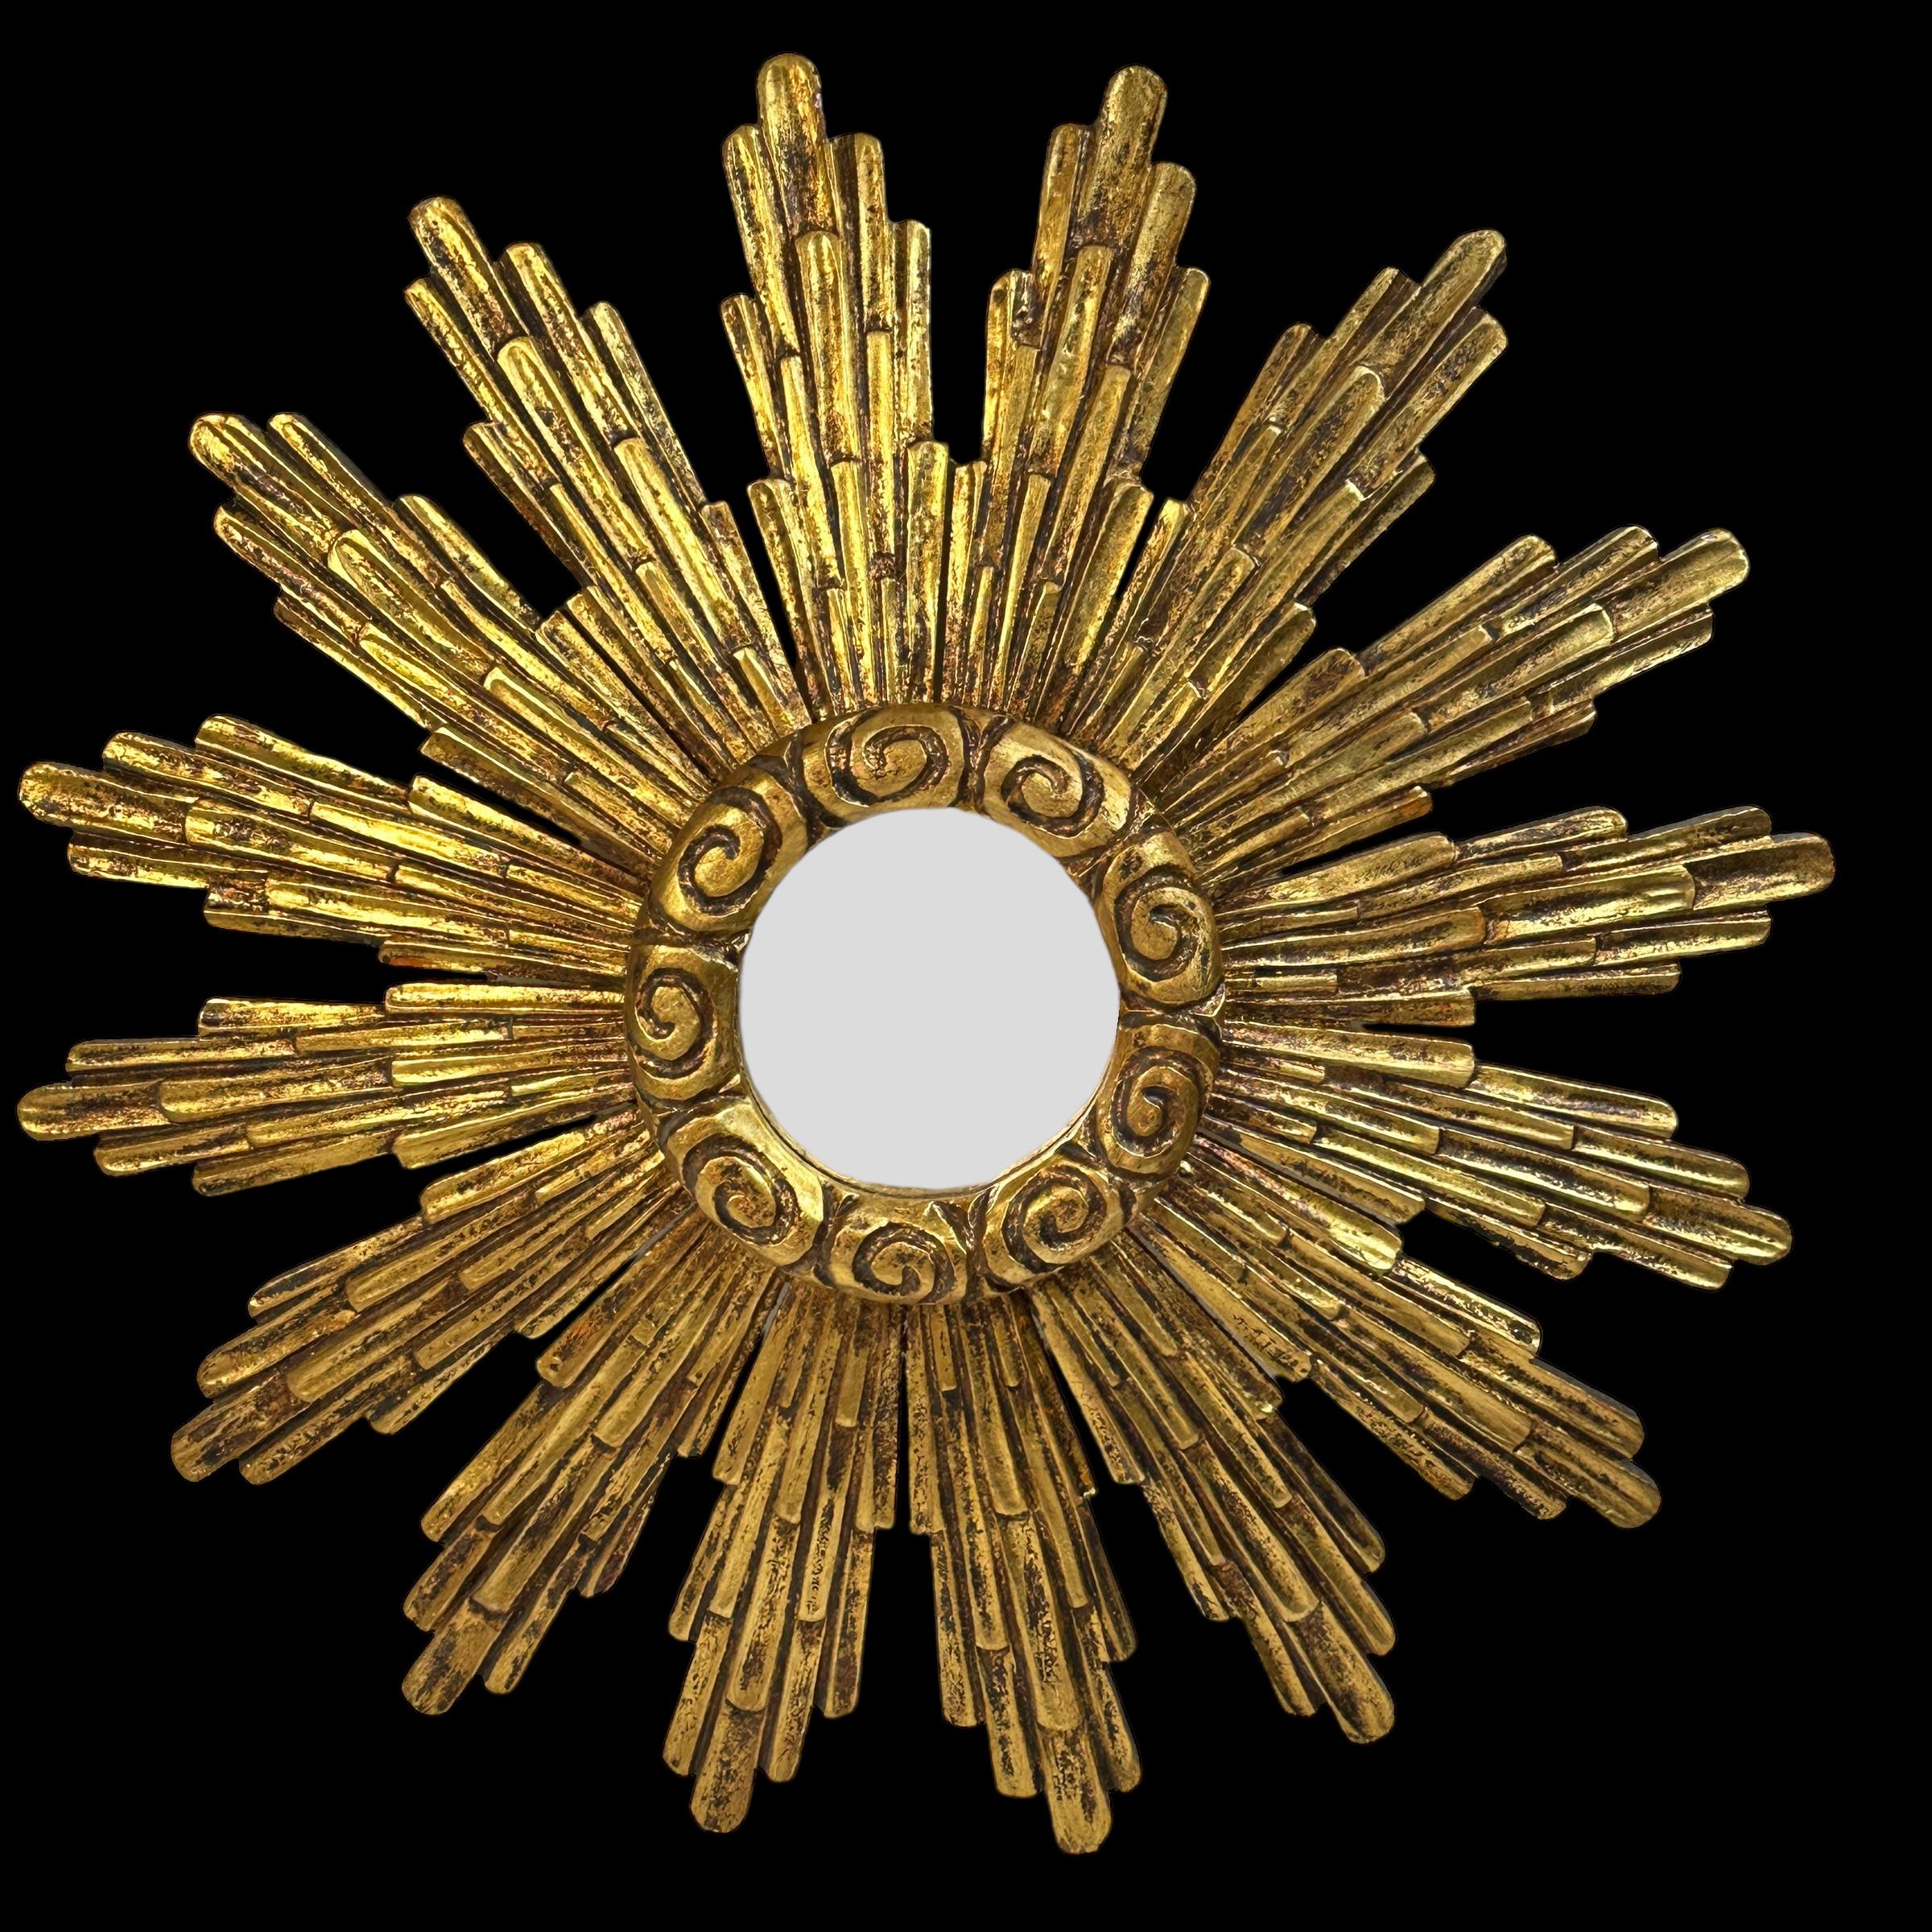 Un magnifique miroir en forme d'étoile et de soleil. Fabriqué en bois doré. Aucun éclat, aucune fissure, aucune réparation. Il mesure environ 23,5 pouces de diamètre, le miroir lui-même mesure environ 4 3/4 pouces de diamètre. Il est situé à environ